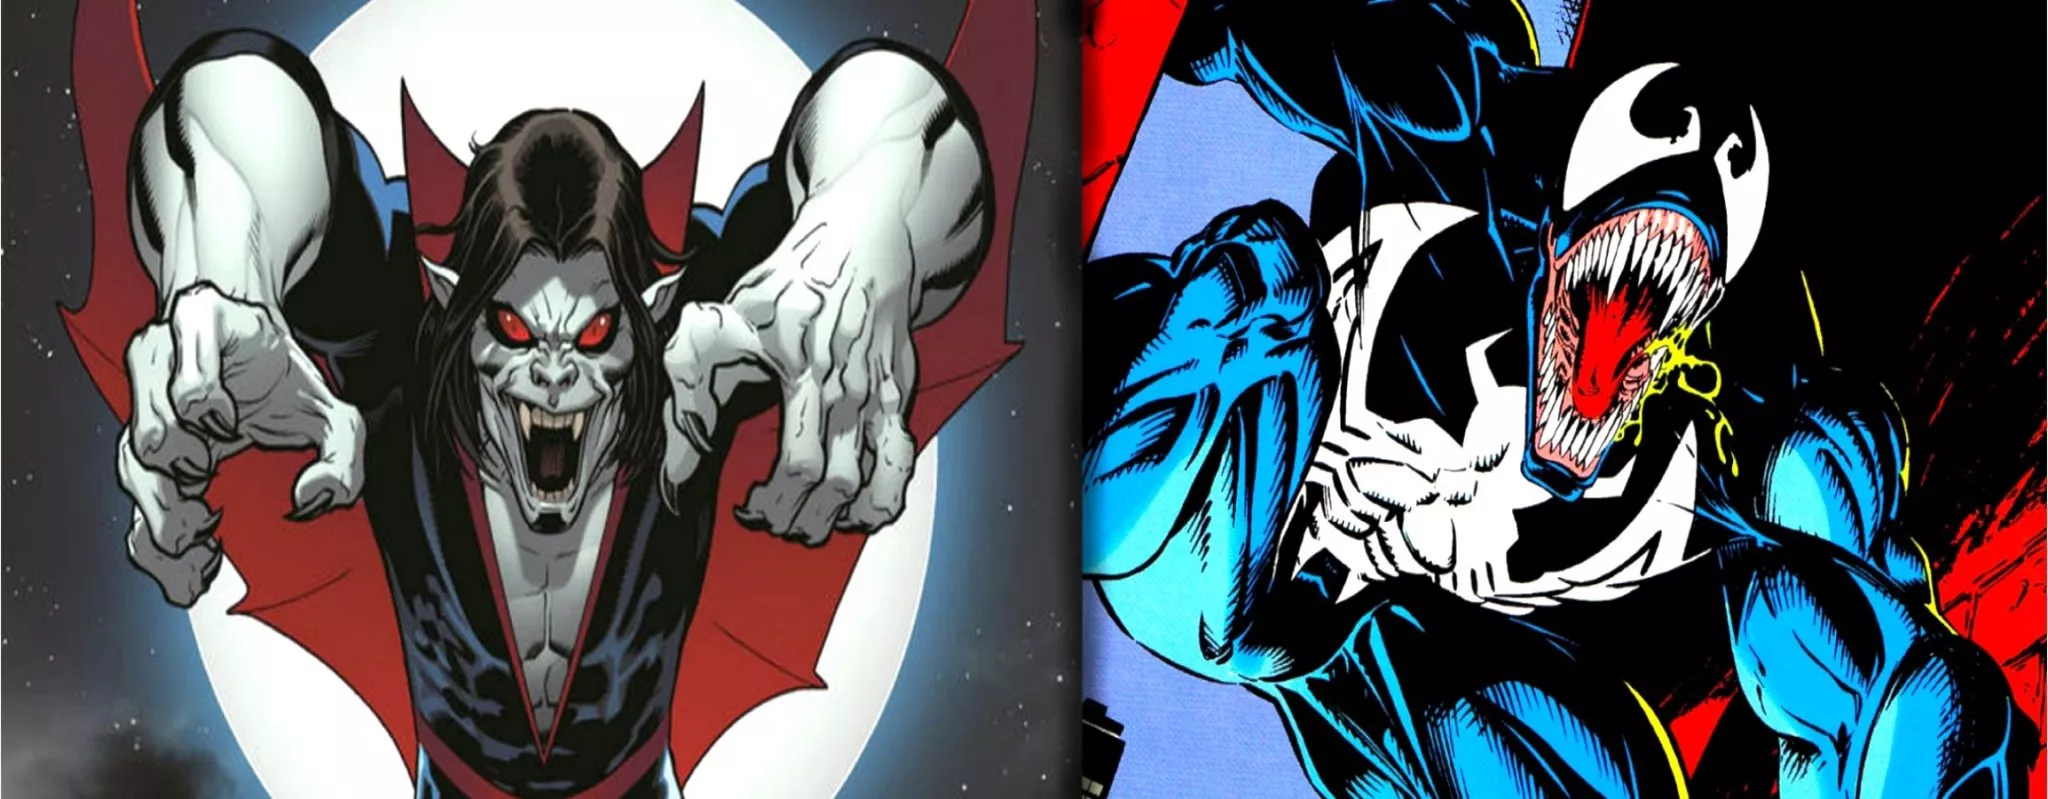 Venom- ի շարունակությունը և Morbius ֆիլմը